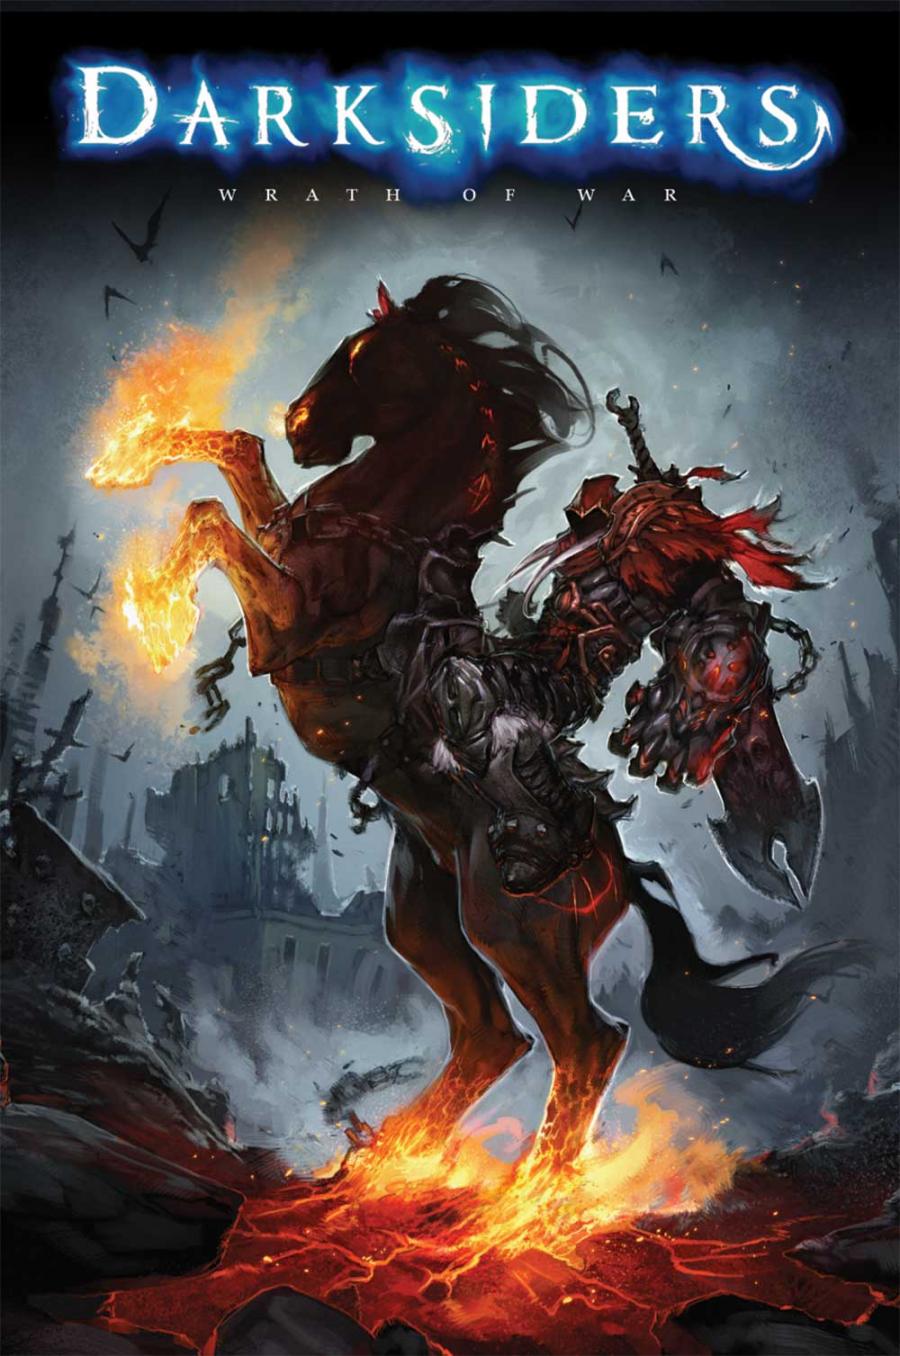 末世騎士-DarkSiders-　　THQ 宣布，由知名漫畫家 Joe Madureira 擔任人物設計的動作冒險遊戲《末世騎士 (Darksiders)》PC 版本正式推出，讓玩家得以身歷其境地體驗以現代世界為背景，描述末世騎士「War（戰爭）」的復仇之旅。

　《末世騎士》（Darksiders）是由 Vigil Games 開發、THQ 公司代理發行的一款結合動作與冒險兩種元素的遊戲，除了有 PS3 與 XBOX360...